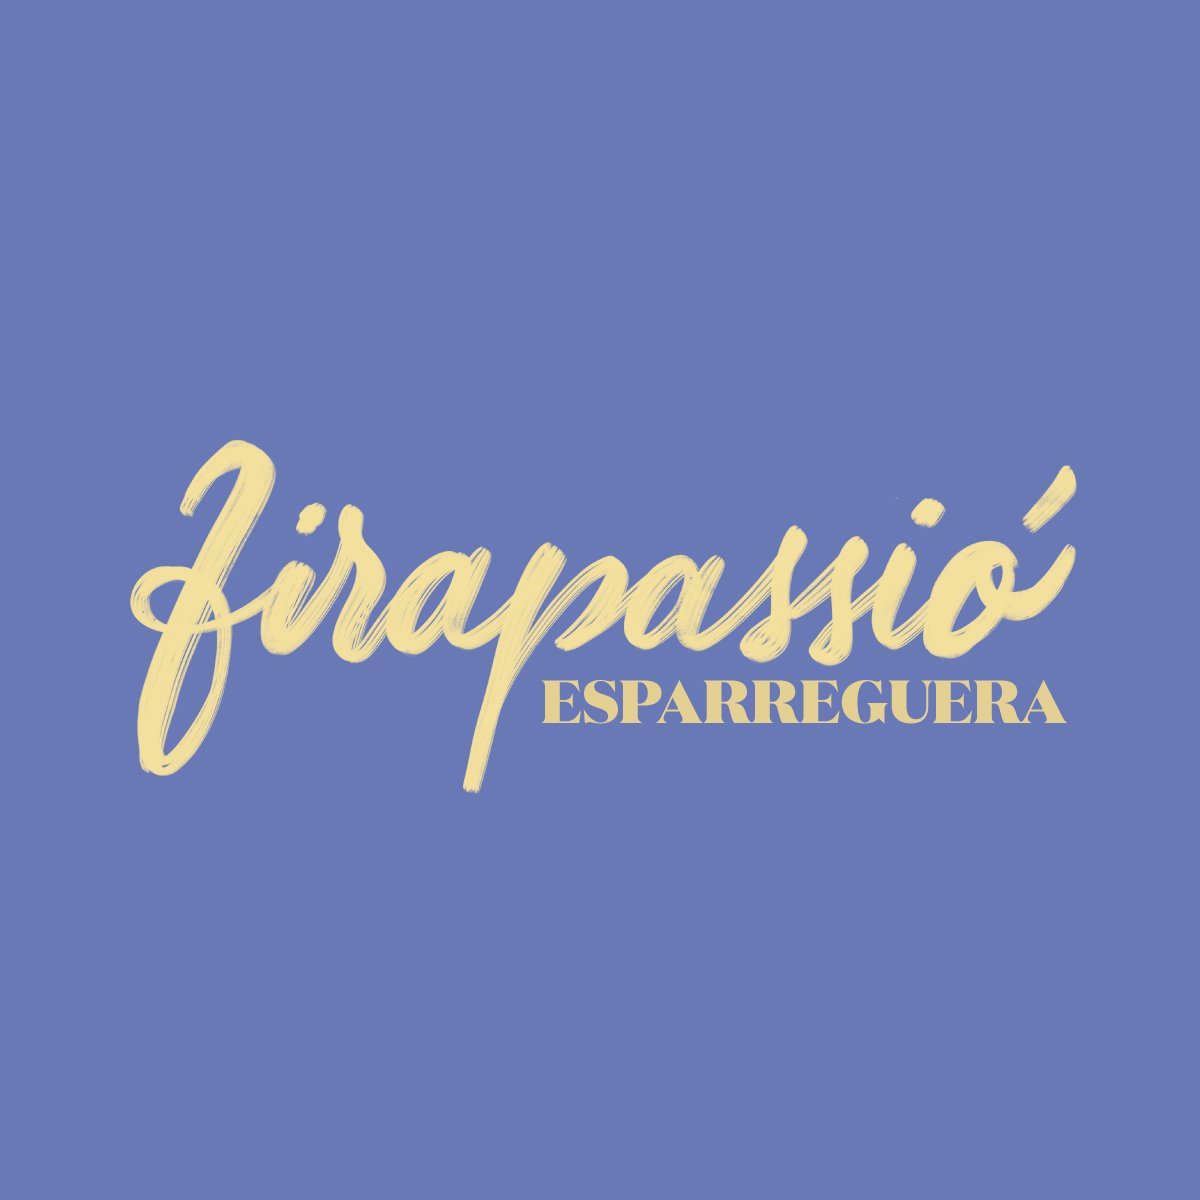 Primer Festival Cultural FIRAPASSIÓ d'Esparreguera
15, 16 i 17 de Febrer 2019